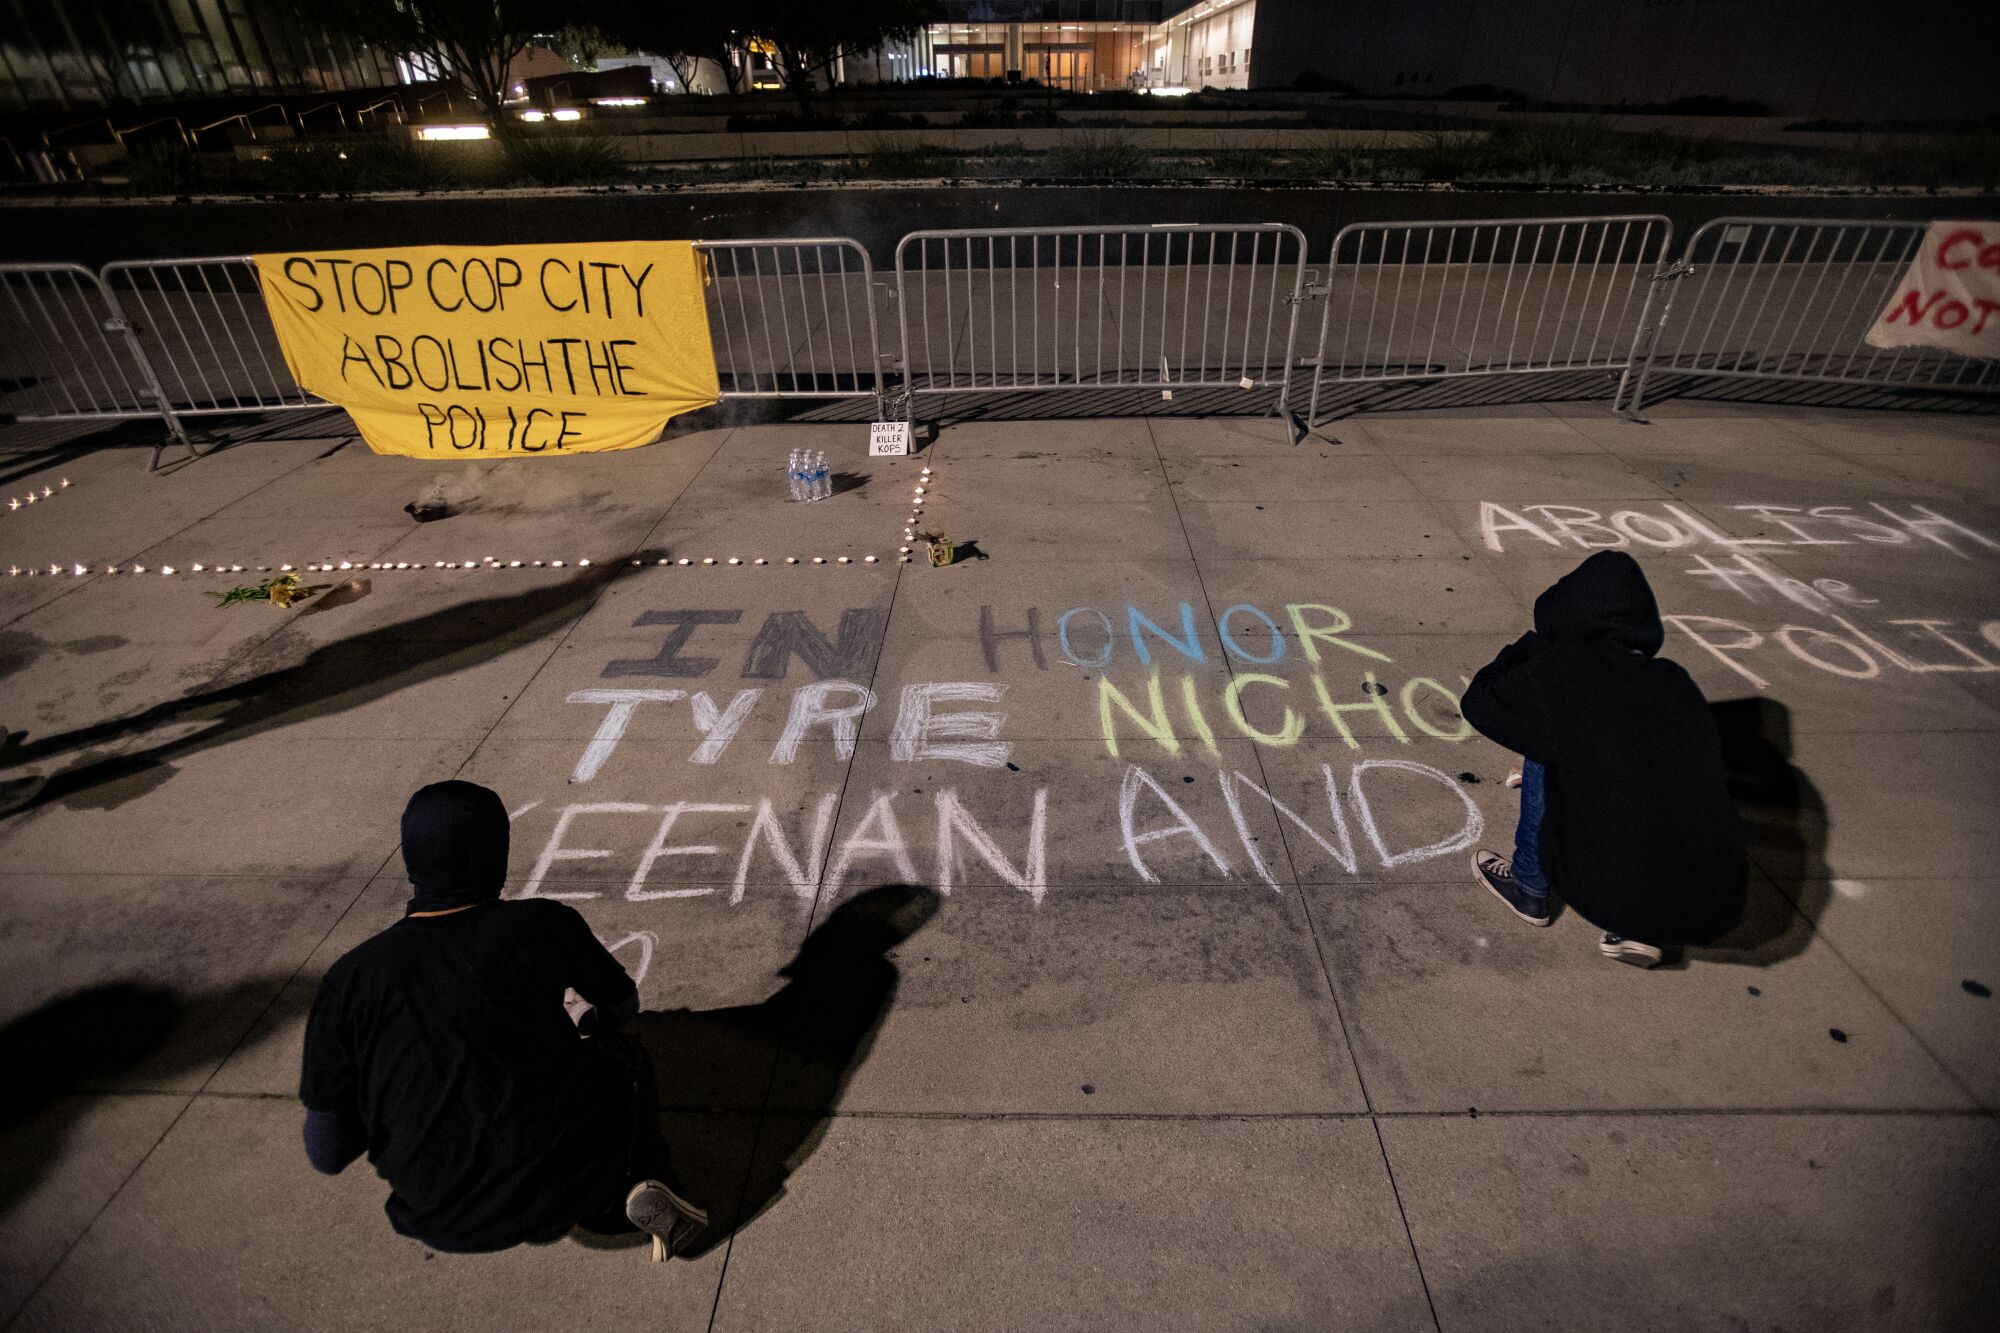 Two people, dressed in black sweatshirts, write "In honor. Tyre Nichols. Keenan Anderson" on the sidewalk